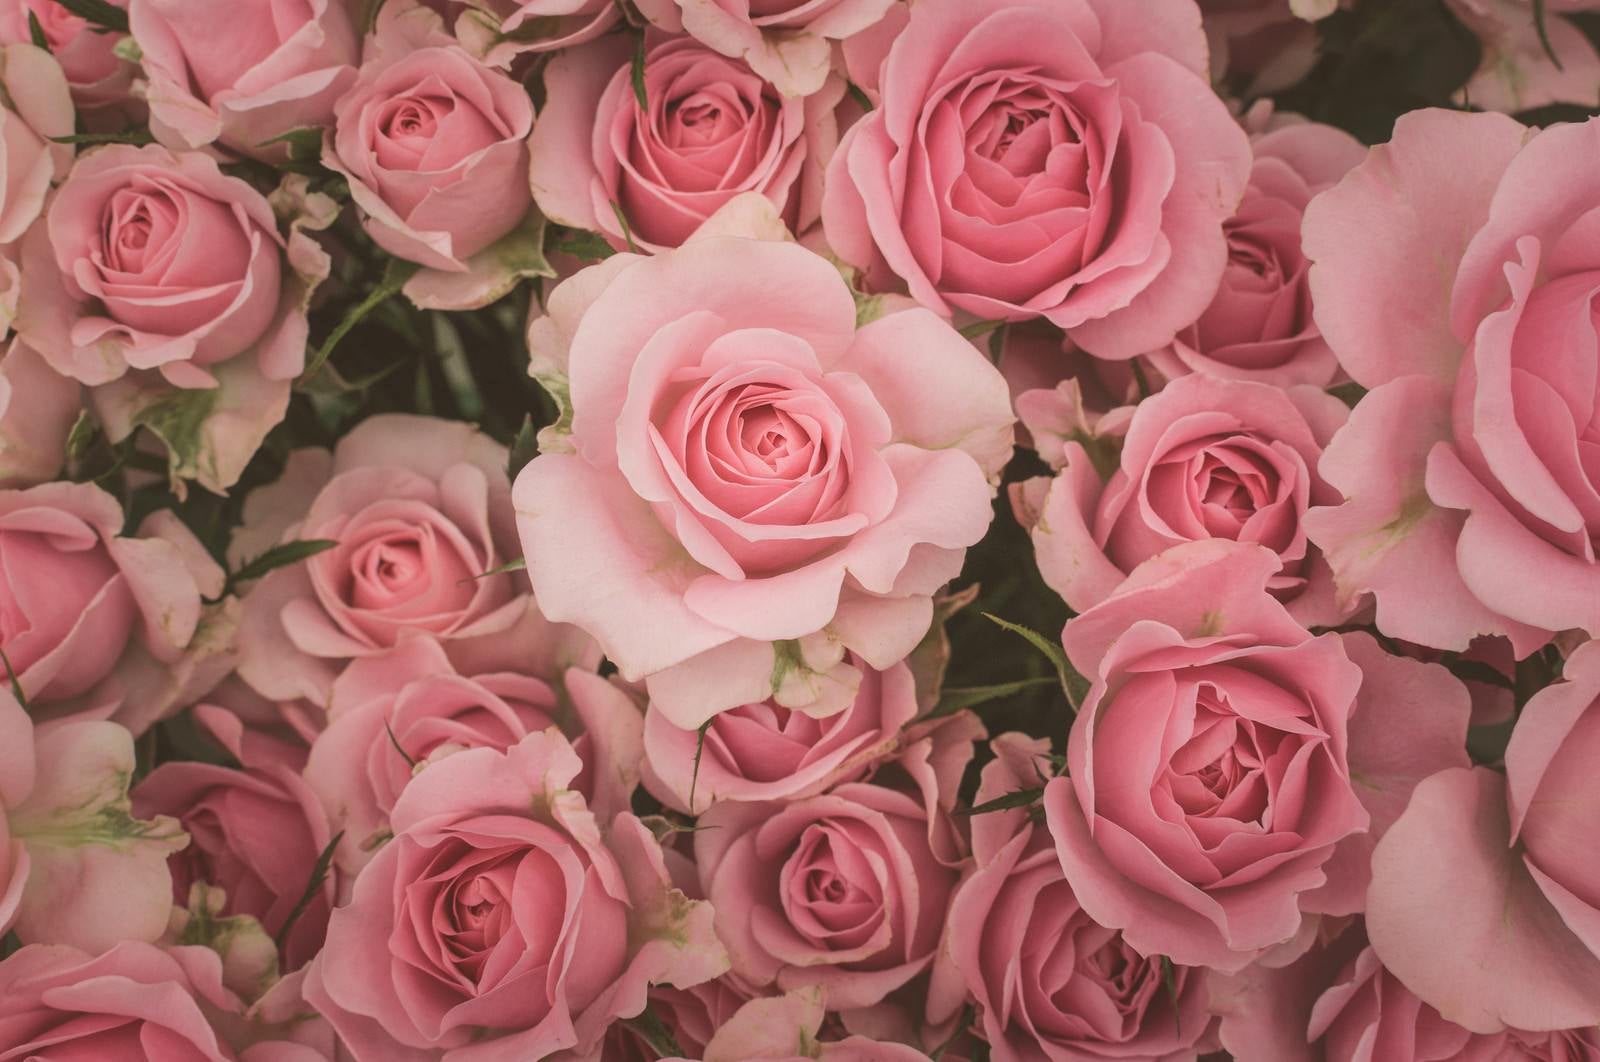 「薄ピンク色の薔薇のテクスチャー」の写真